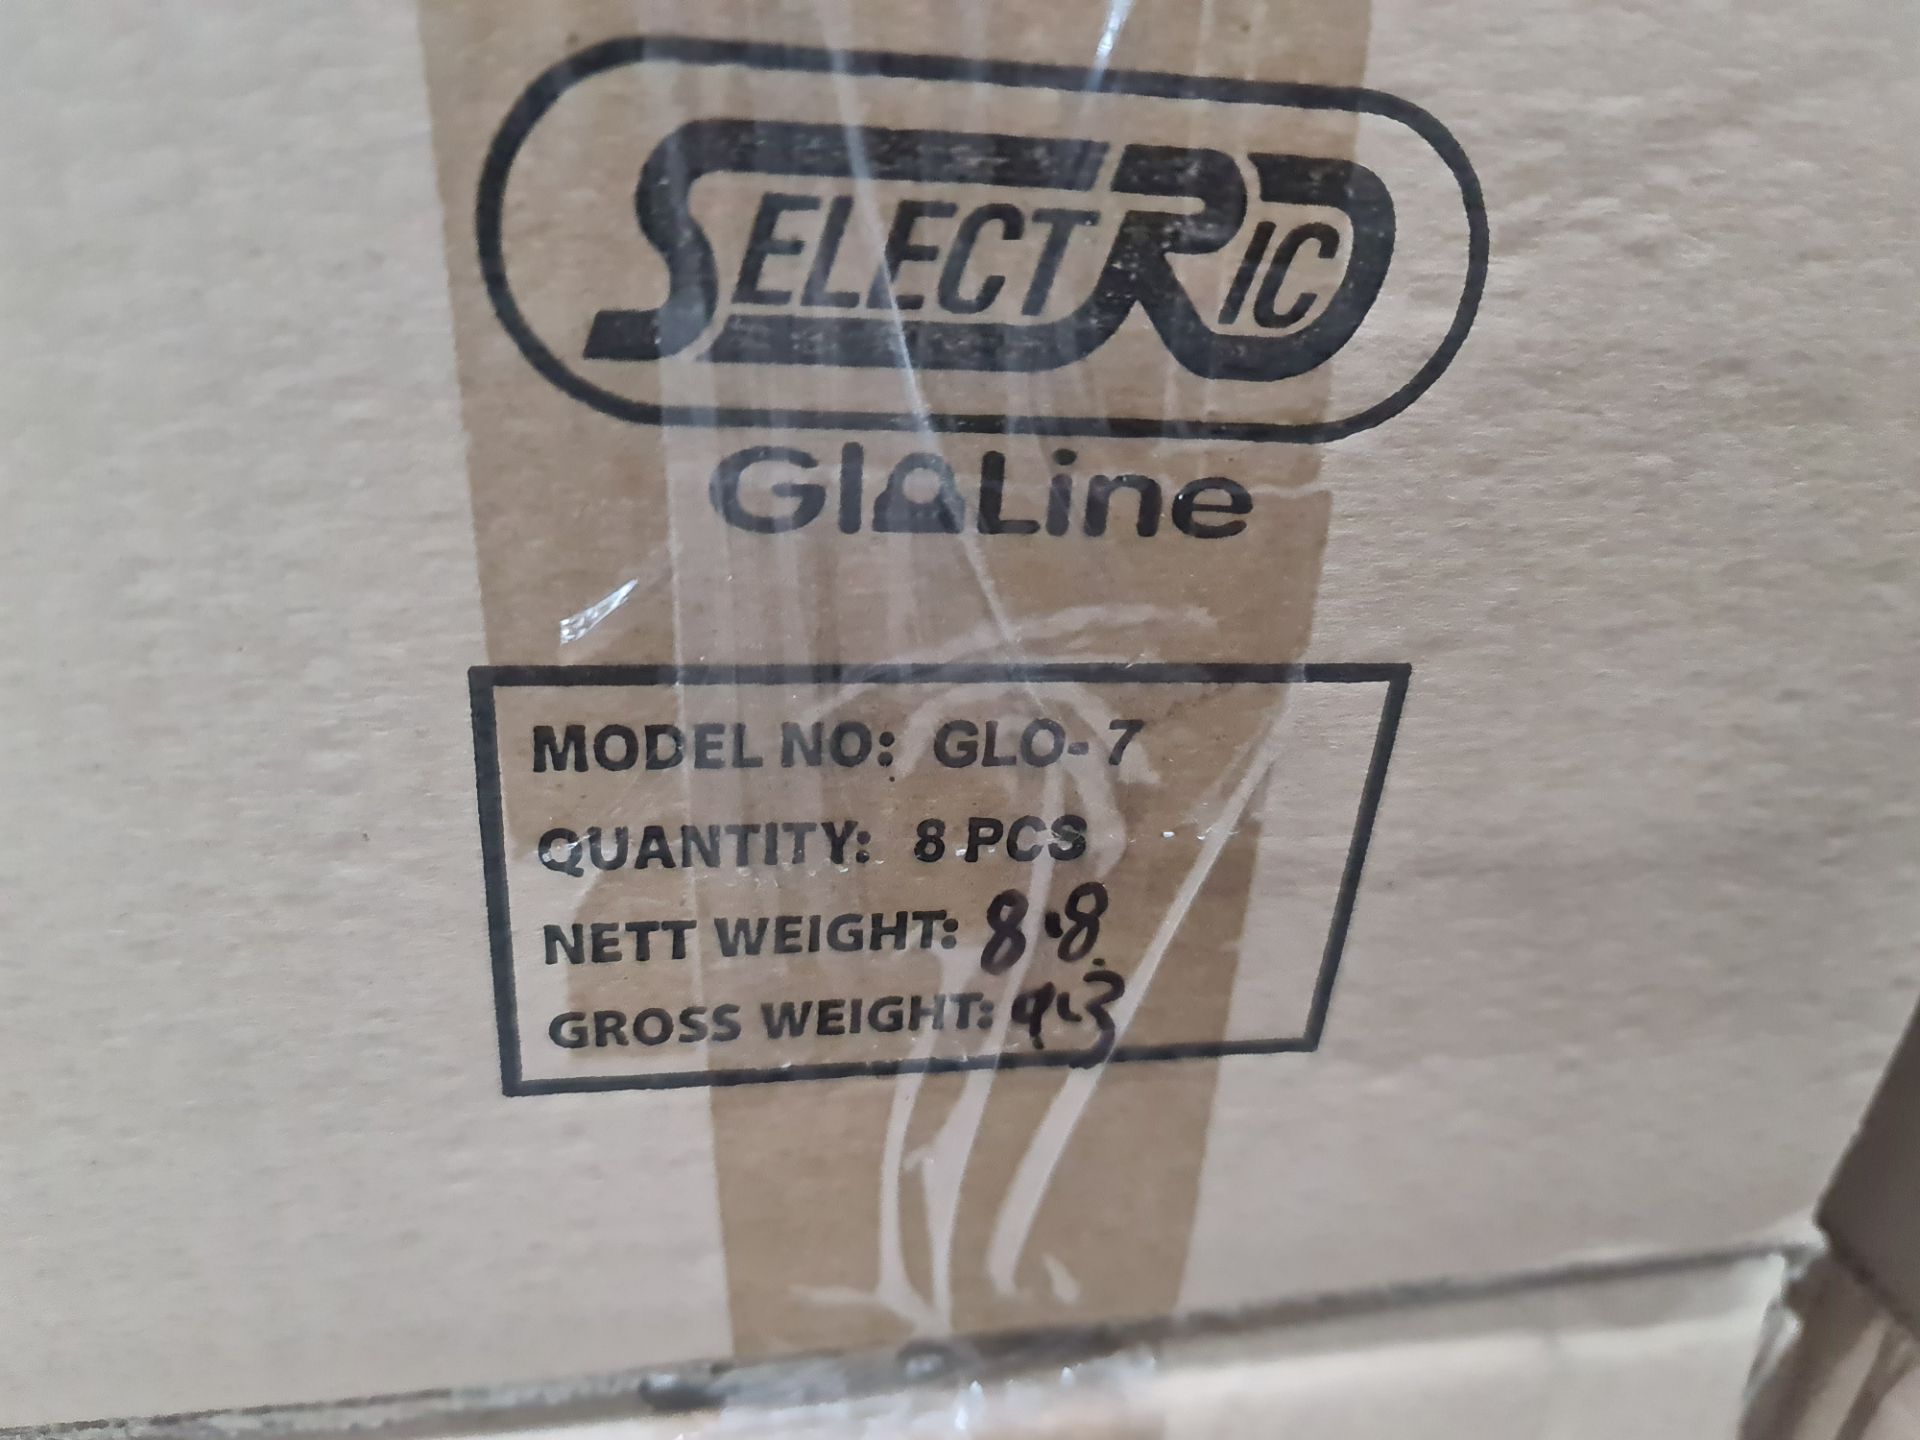 23 off (3 cases) Selectric Gloline model GLO-7 twin LED batten lights, 4000k, 2ft, 20w, 230v, 168LED - Image 2 of 3